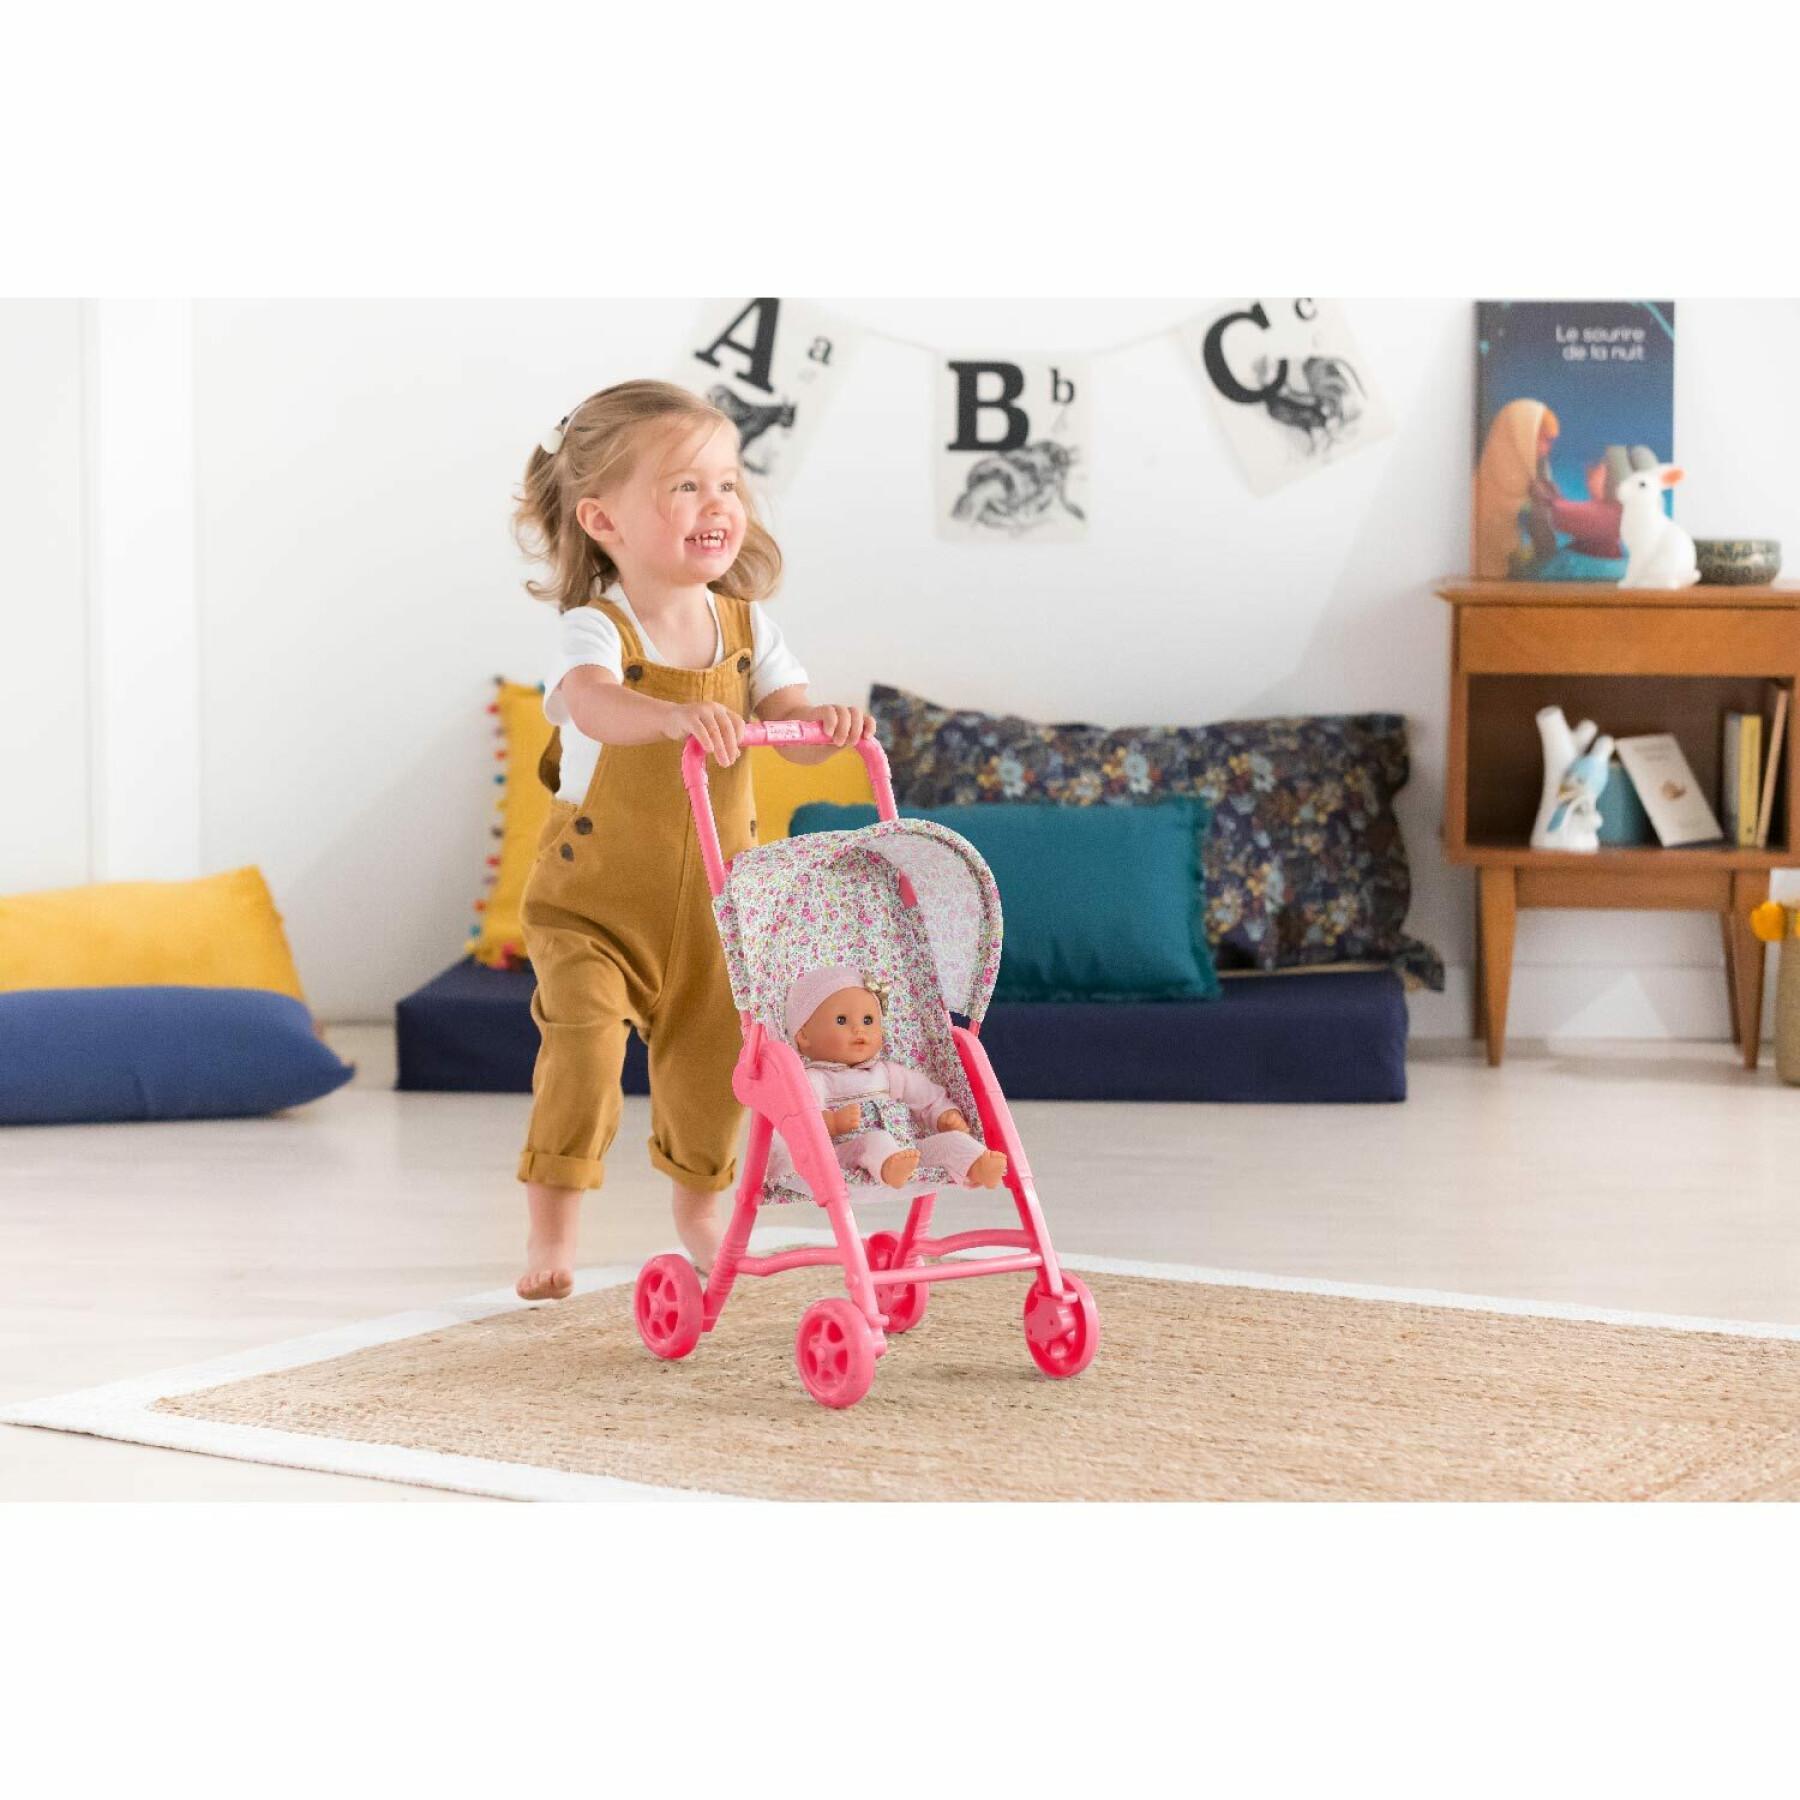 Flowered stroller for baby Corolle